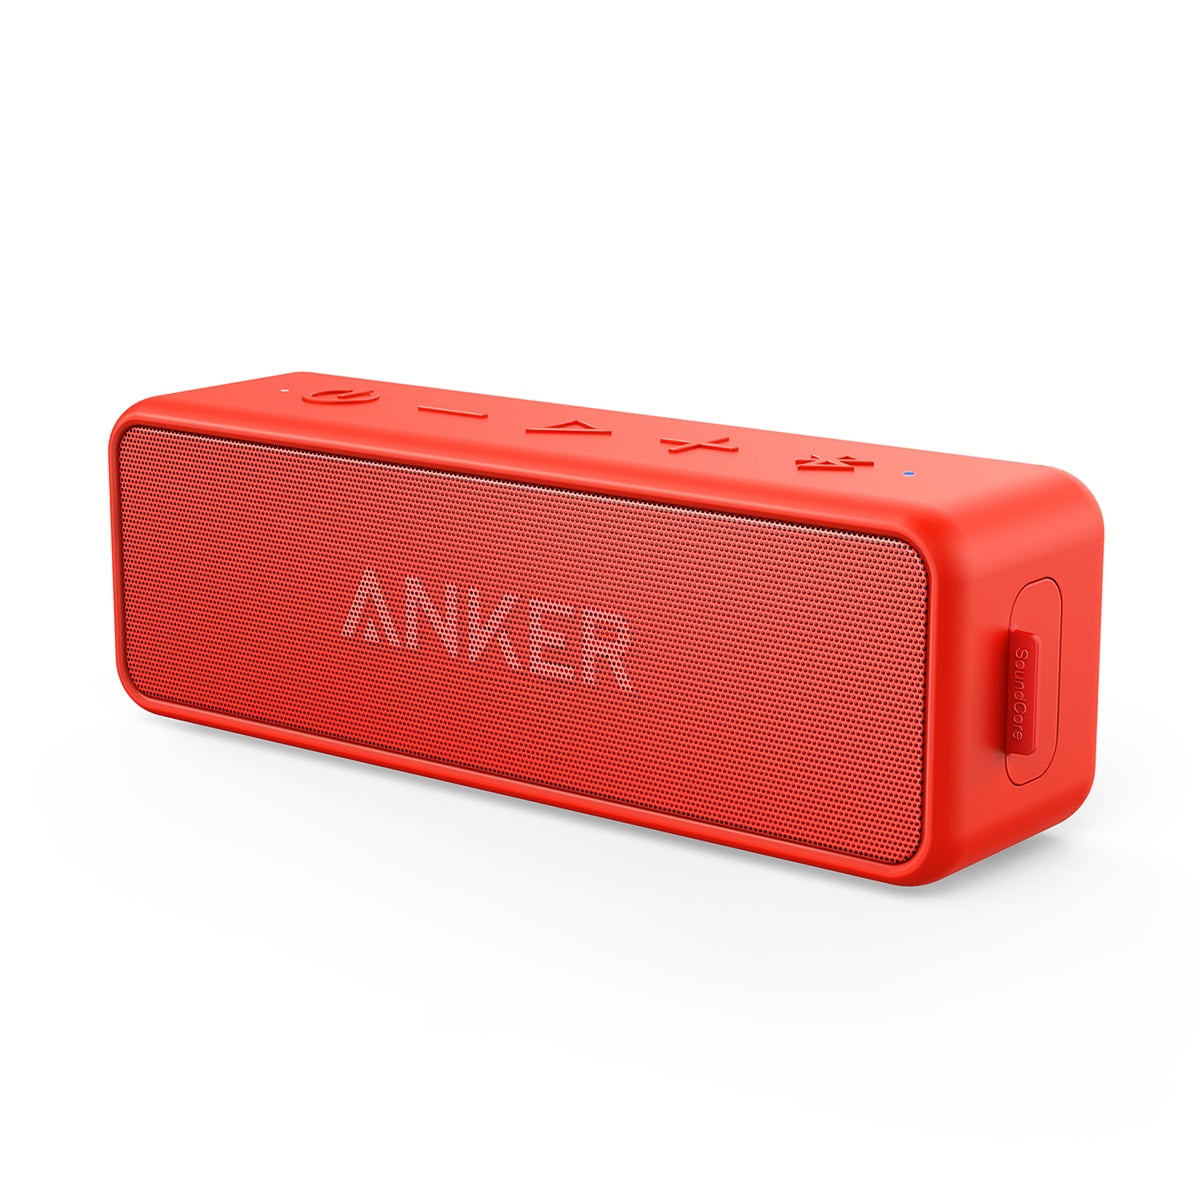 Anker Soundcore 2 Portable Wireless Bluetooth Speaker Built-in Mic Waterproof ,Red - Walmart.com